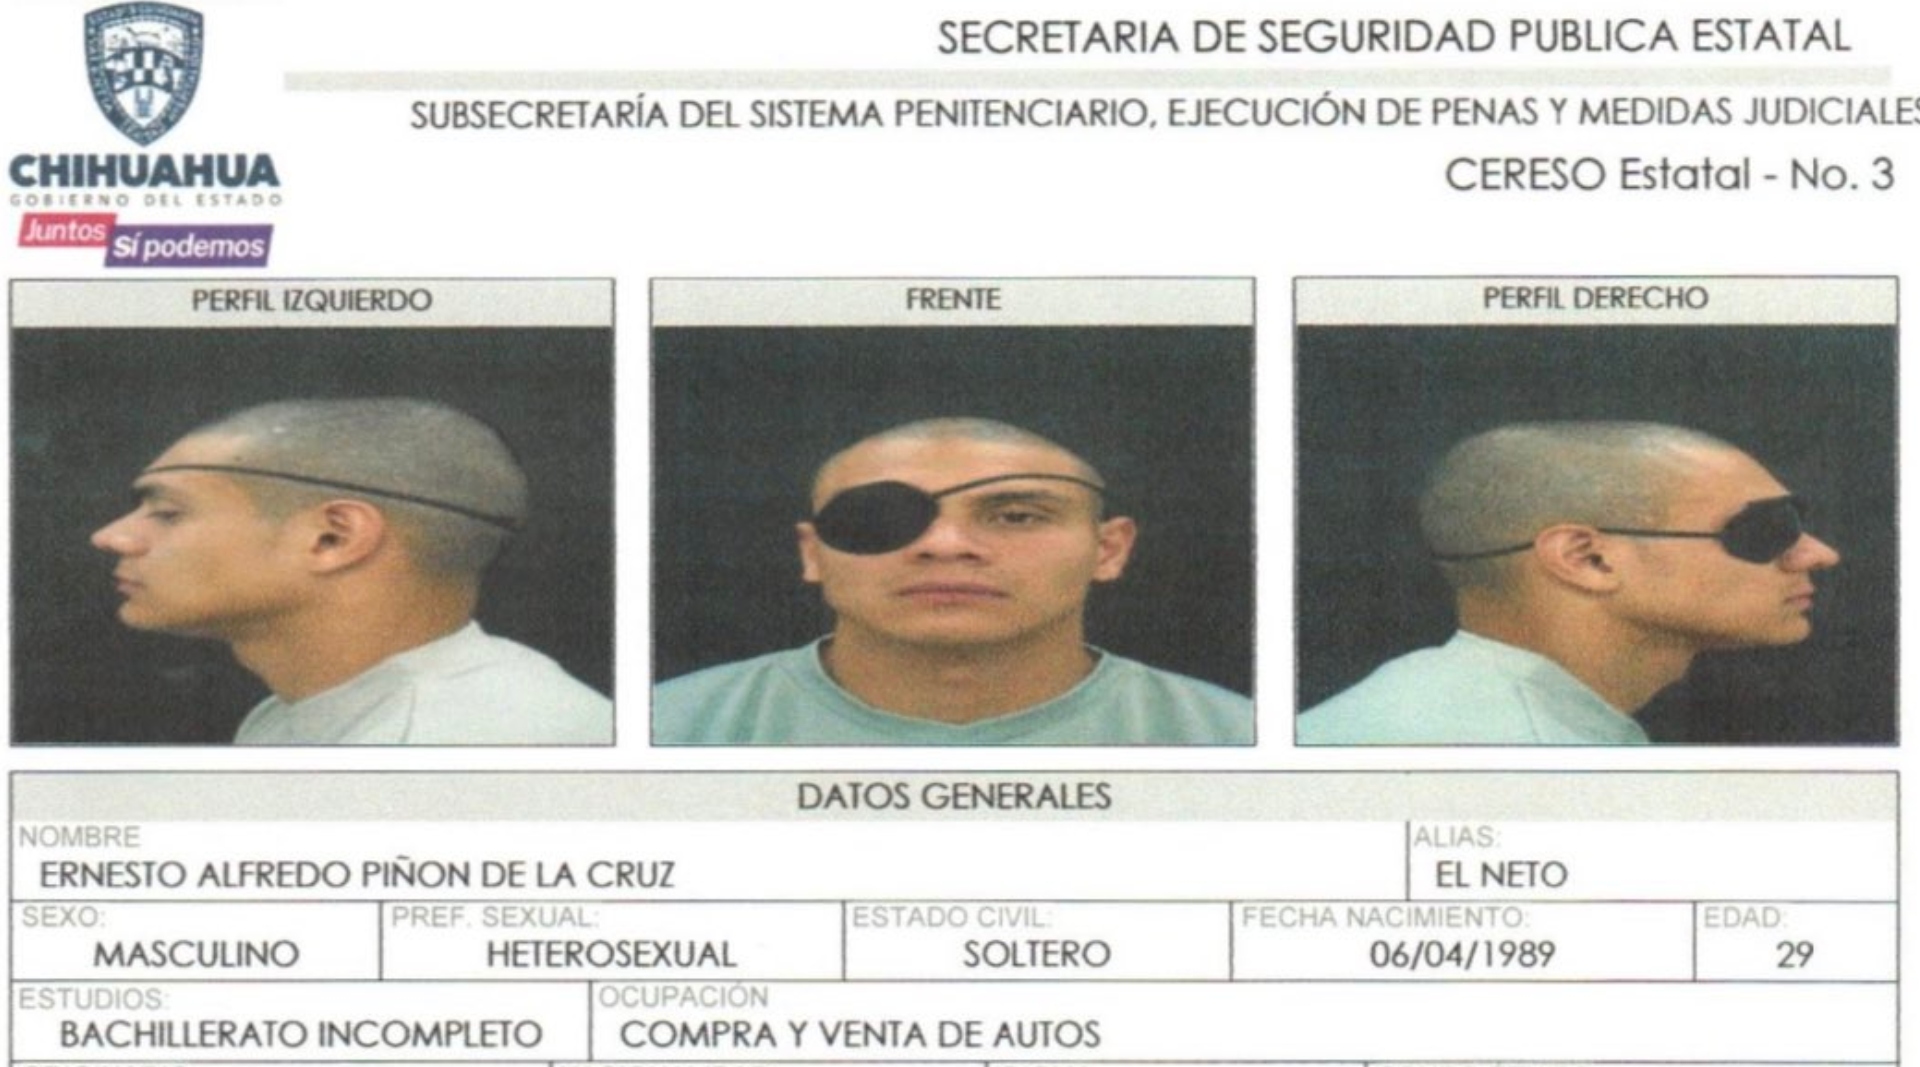 “¿Les parezco malo?”: la risueña entrevista de “El Neto” antes de fugarse del penal de Ciudad Juárez 